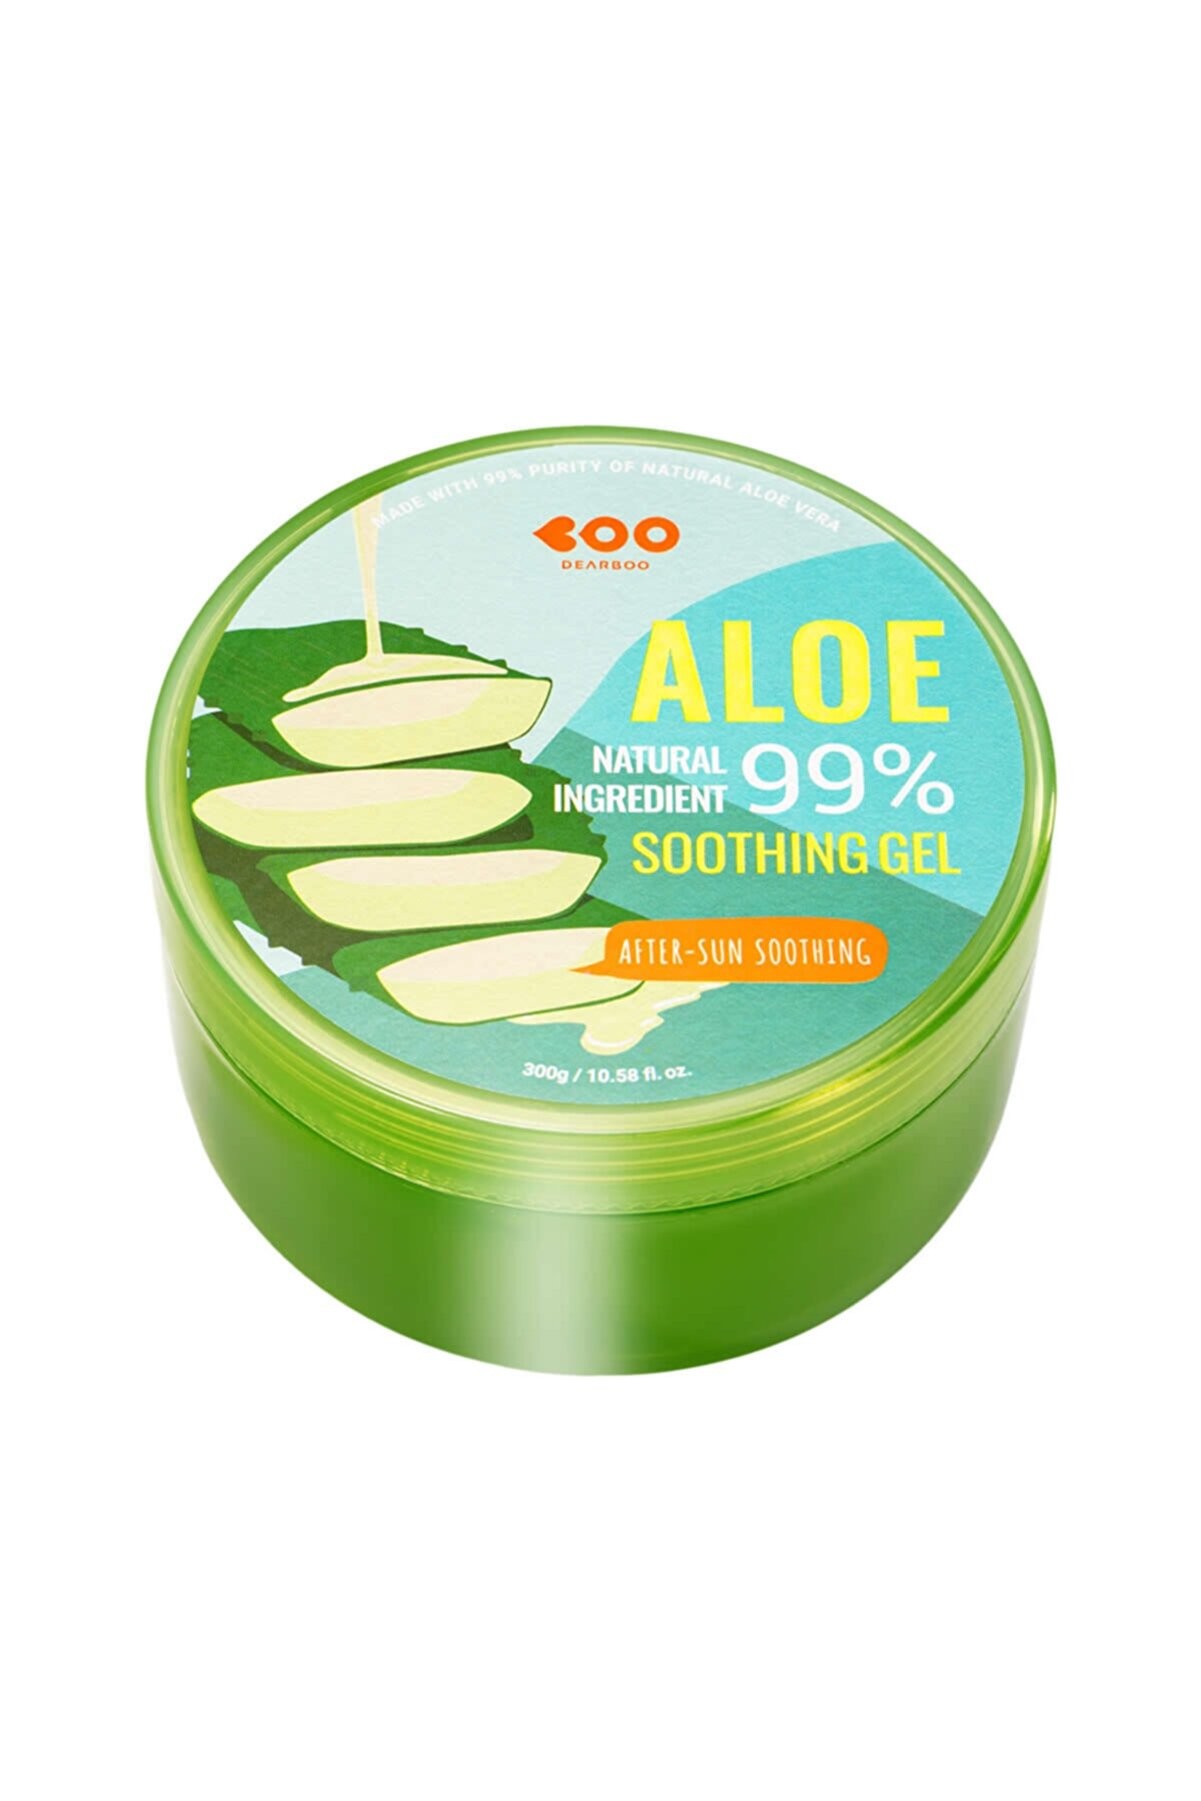 DEARBOO %99 Aloe Vera Jel Aloe After Sun Soothing Gel